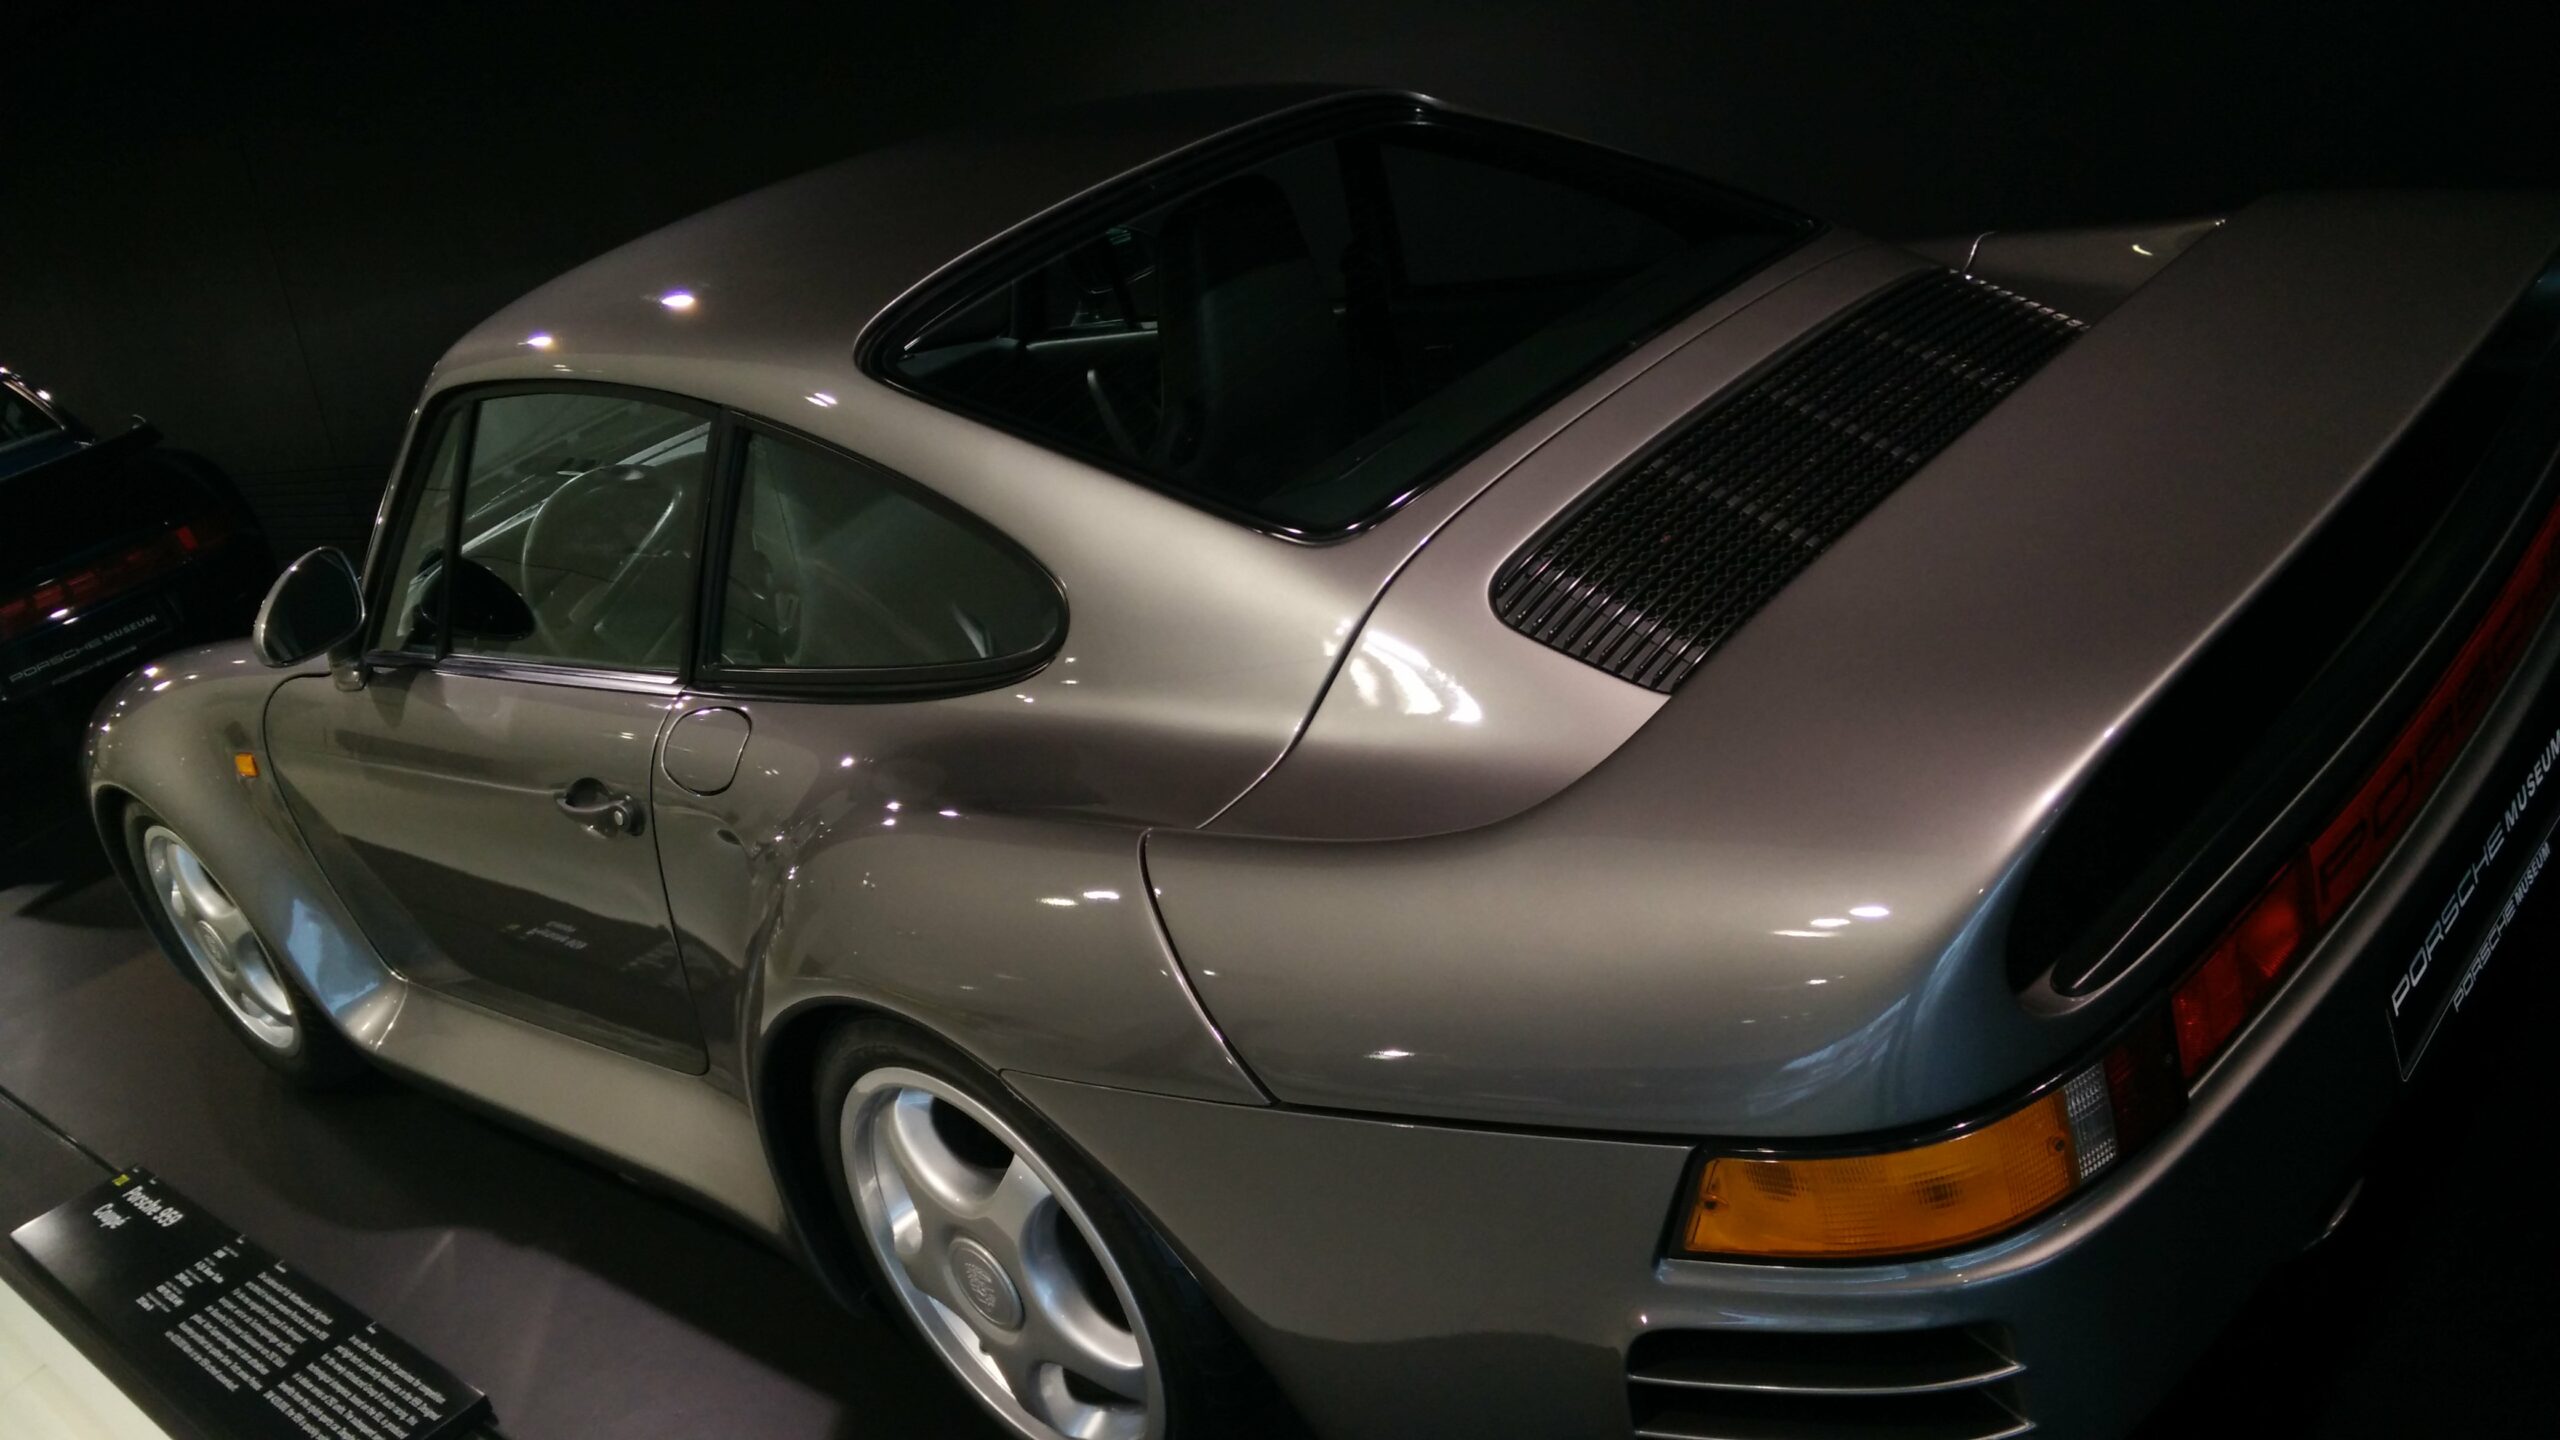 Porsche 959 on display at Porsche museum